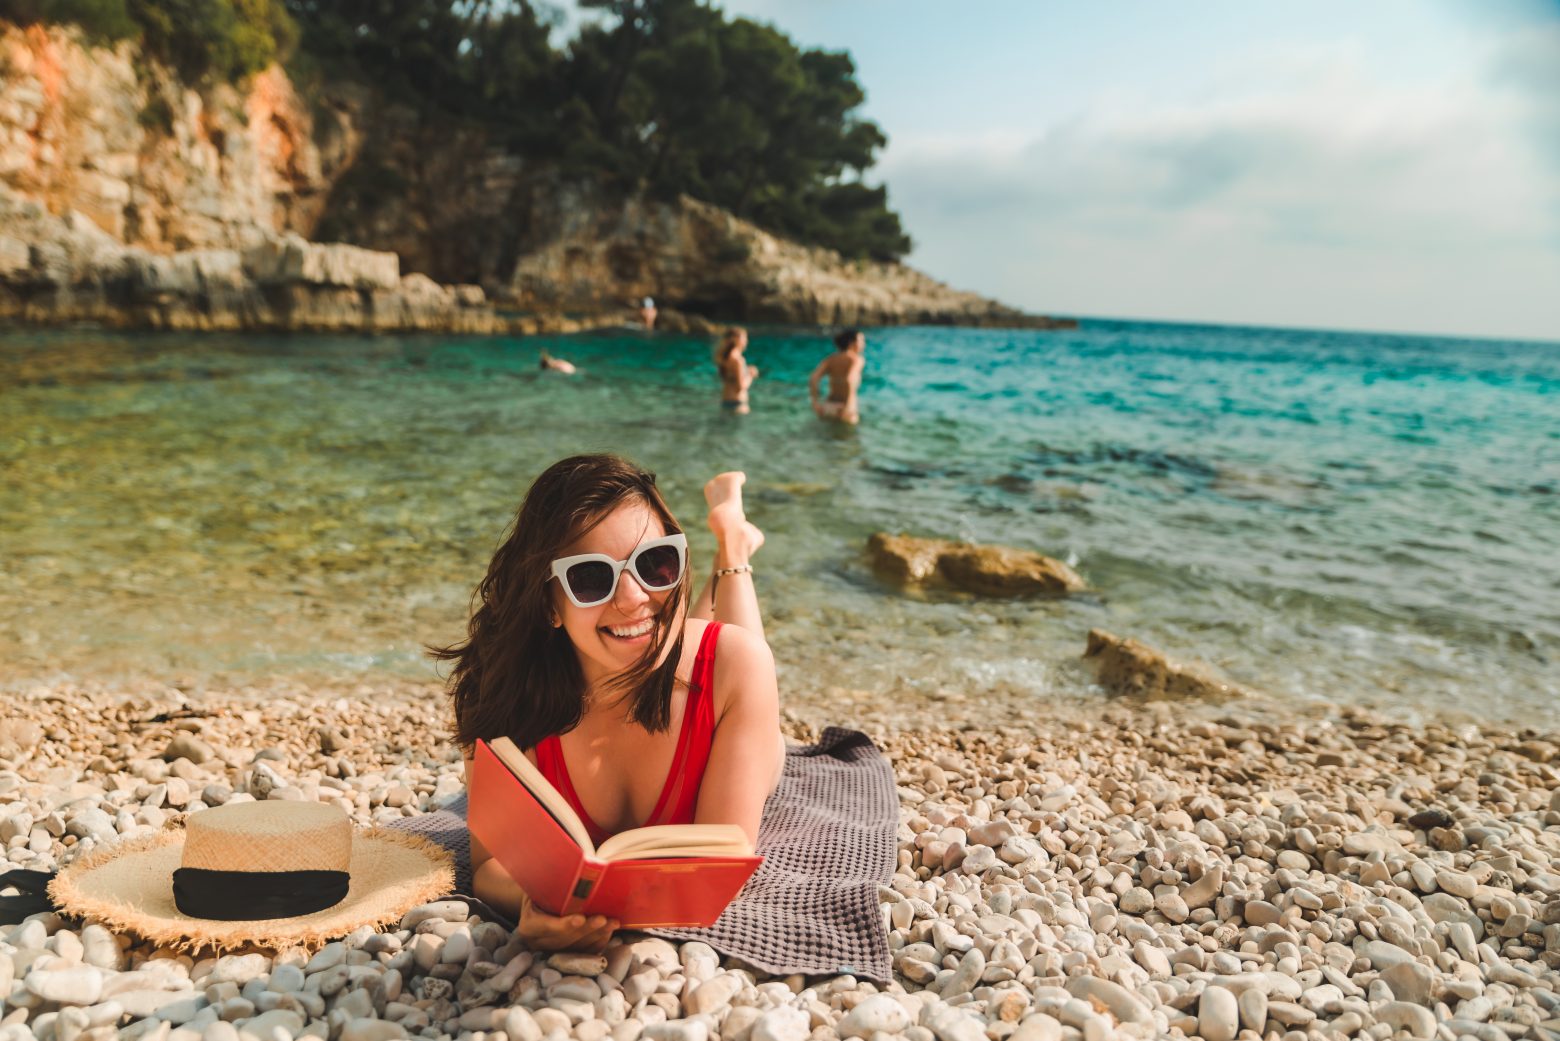 Βιβλία: Οι 5 κορυφαίες επιλογές για να διαβάσεις στη παραλία